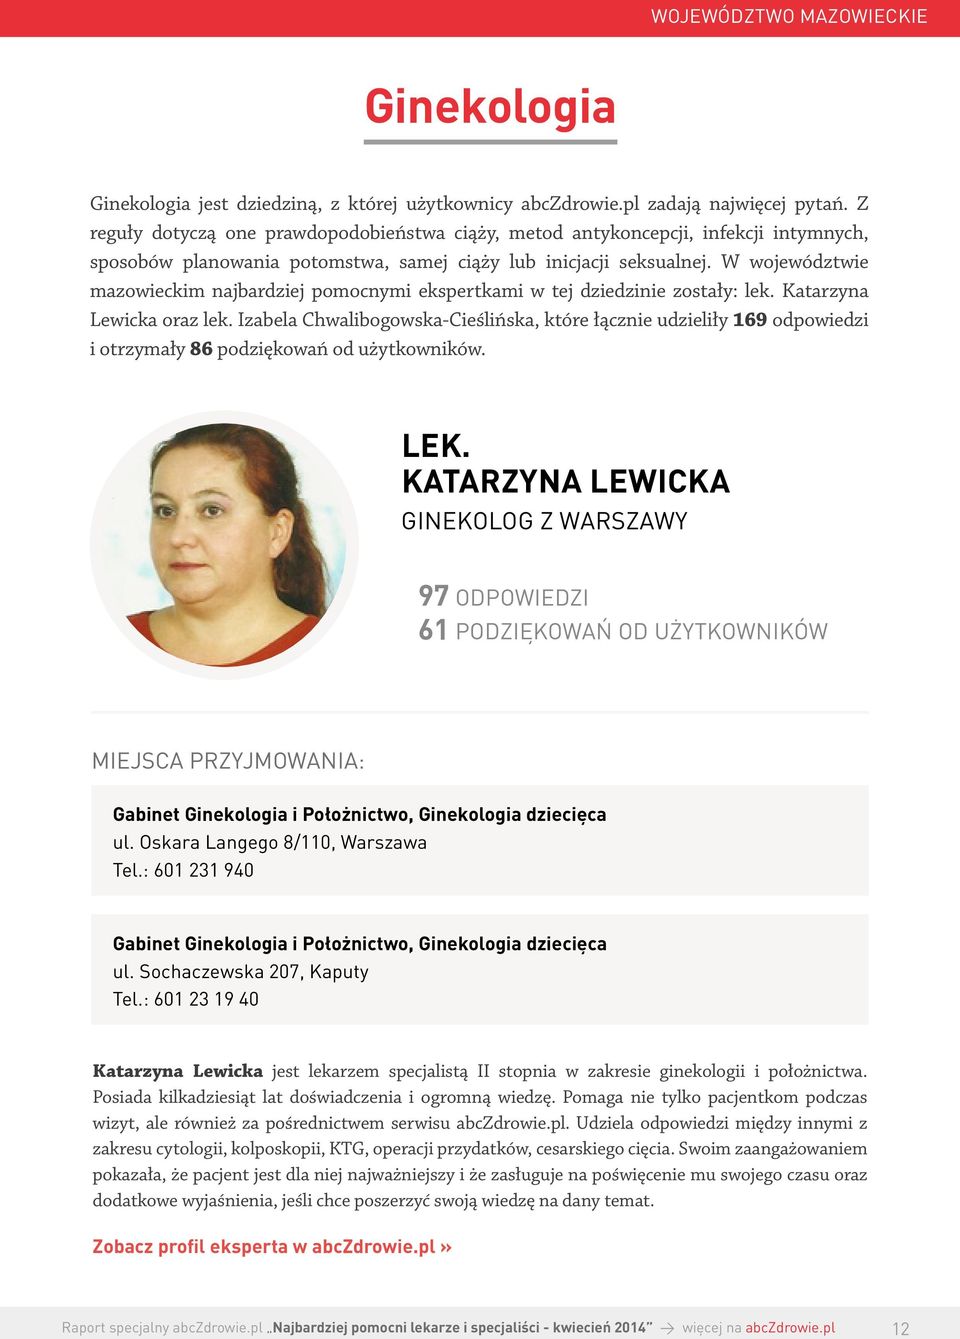 W województwie mazowieckim najbardziej pomocnymi ekspertkami w tej dziedzinie zostały: lek. Katarzyna Lewicka oraz lek.